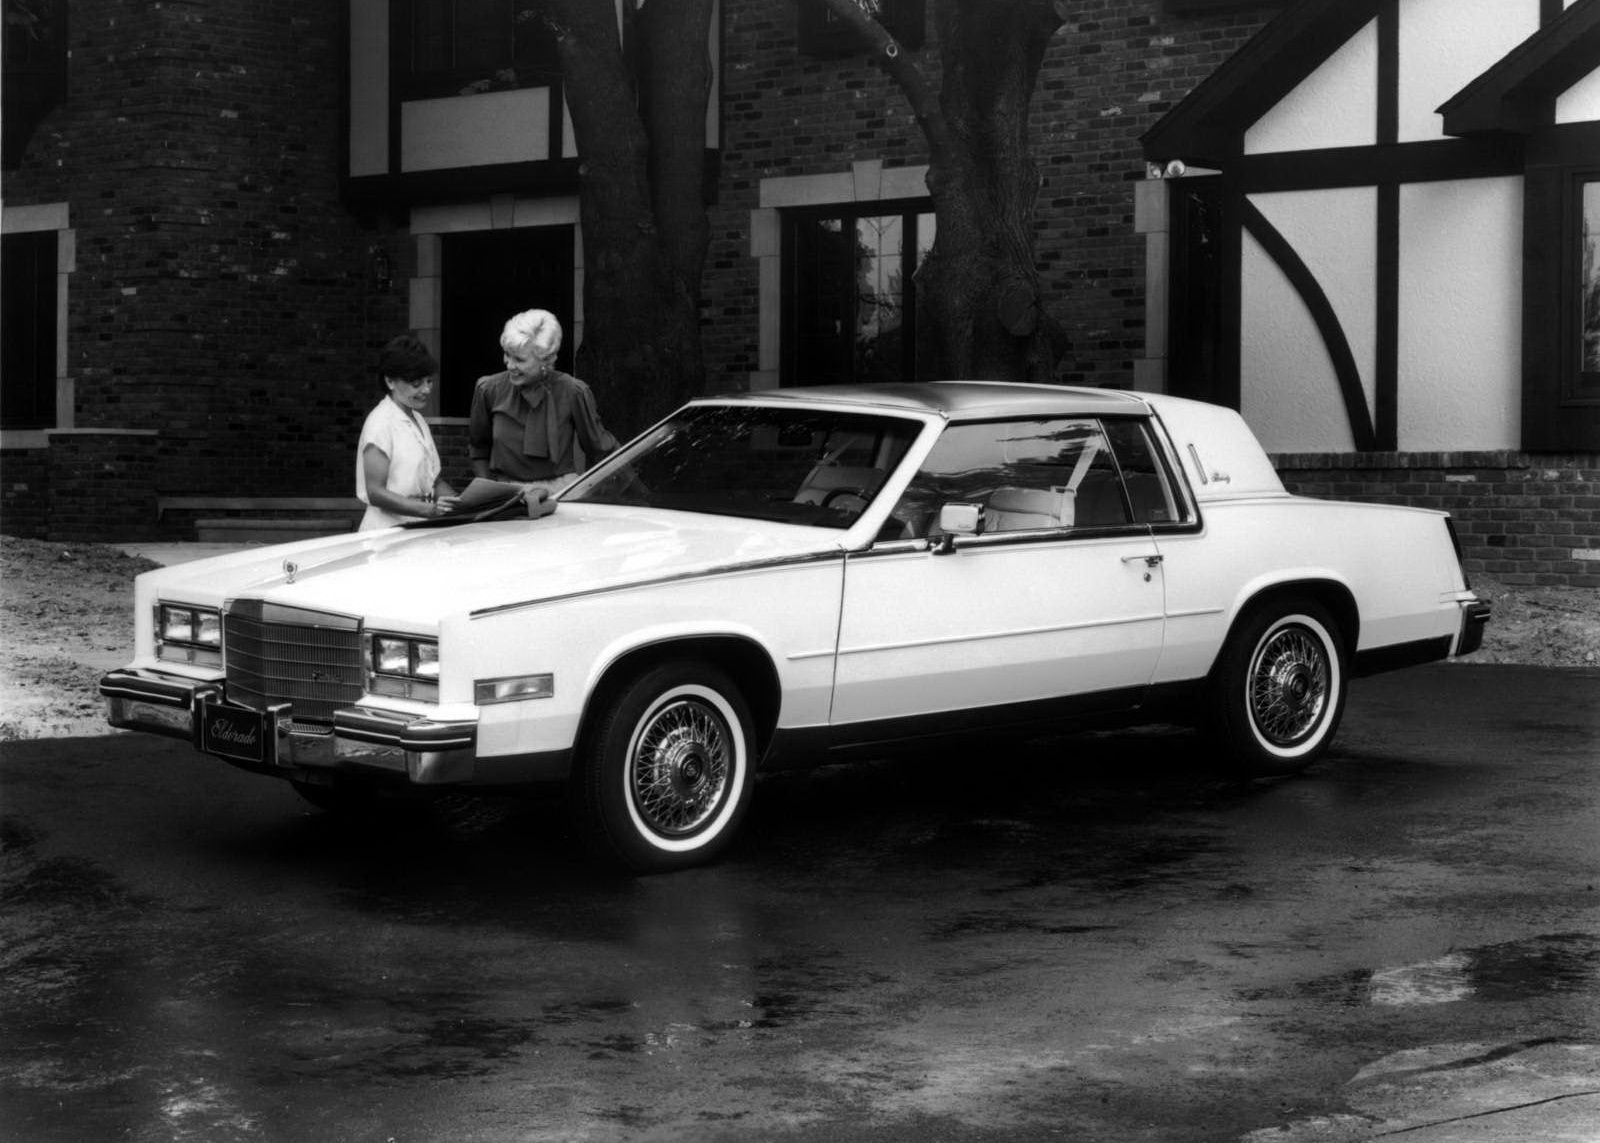 Cadillac slaví 115. výročí - vozy automobilky